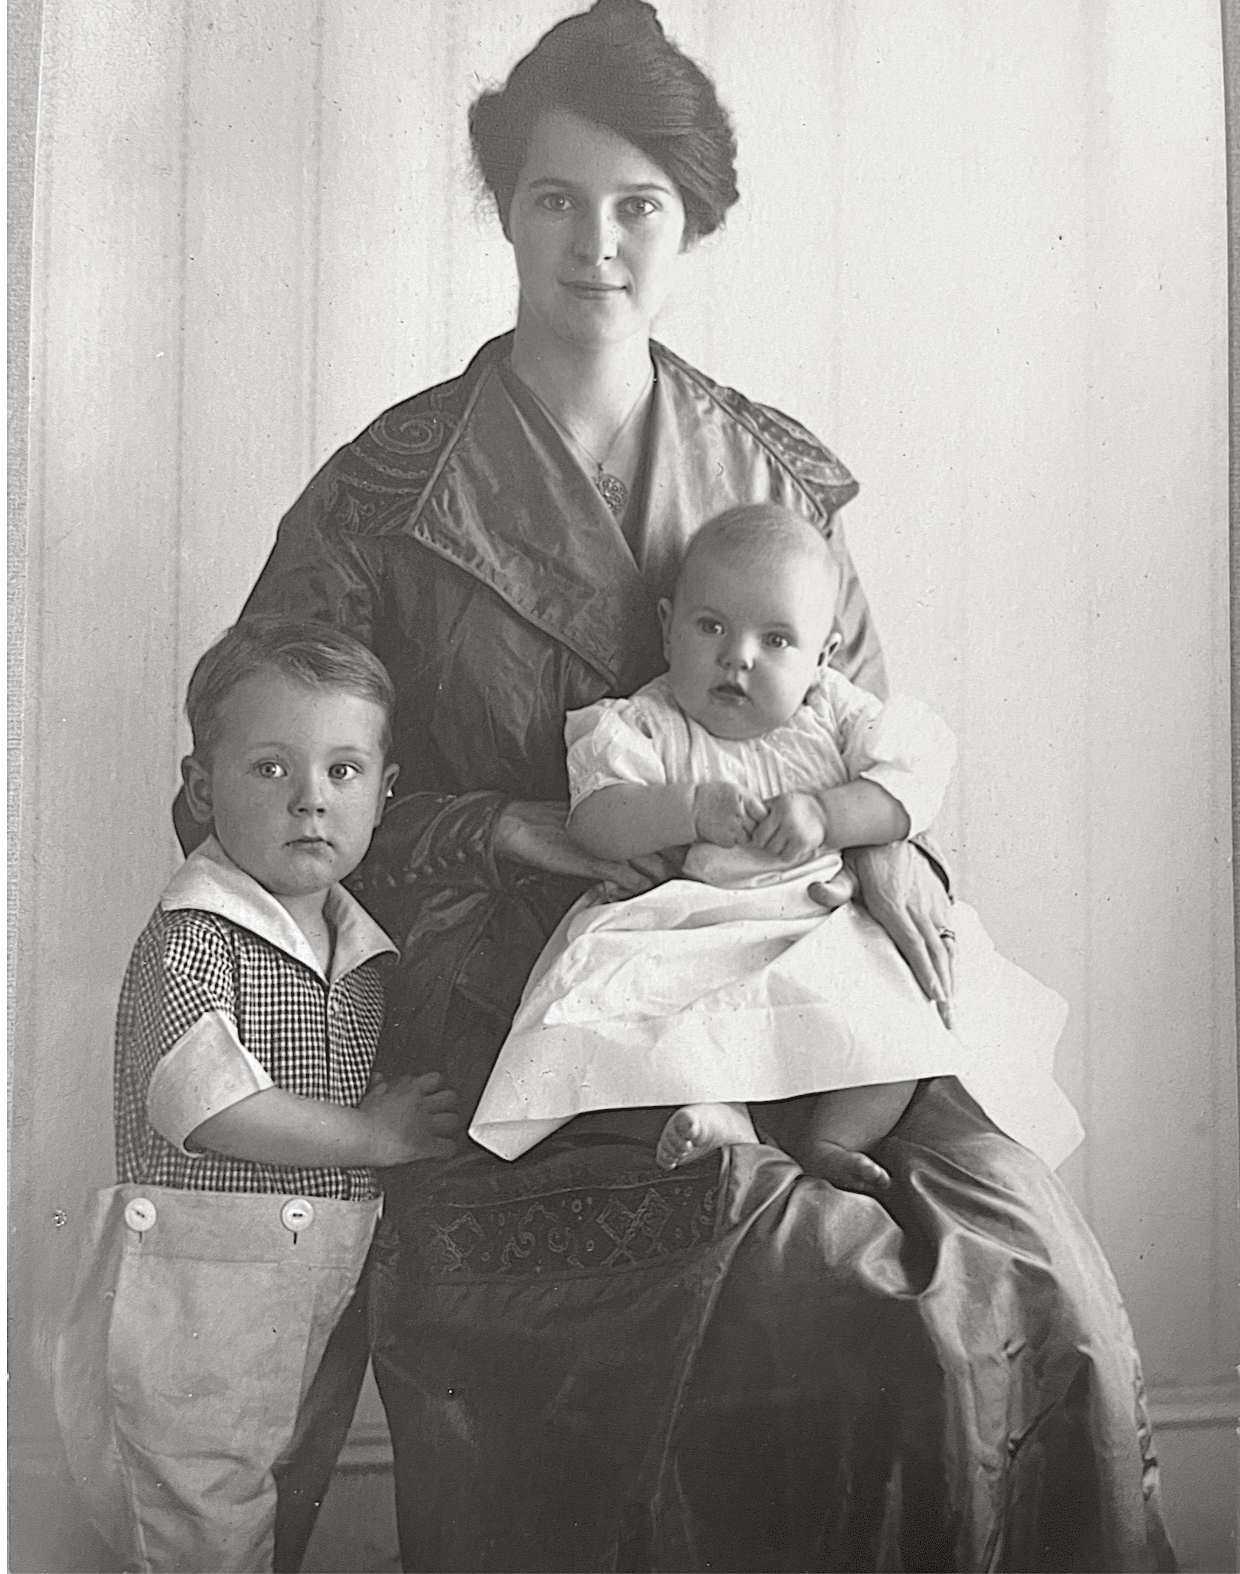 Sandys bestemor, Reba, med barna sine i 1917. Foto forbedret og fargelagt av MyHeritage.